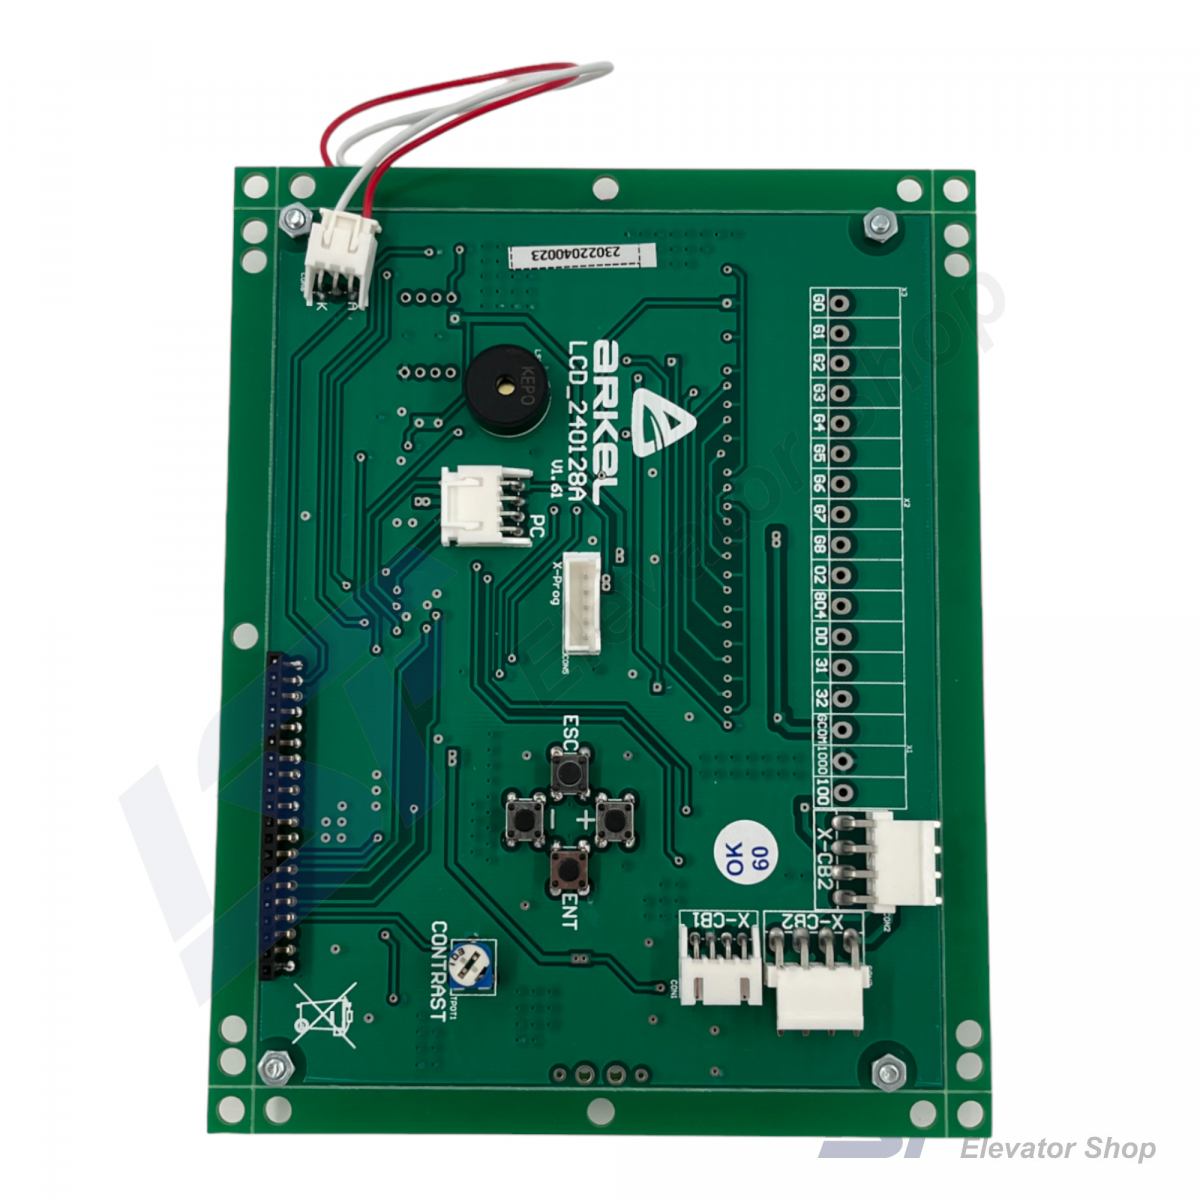 Arkel LCD240X128A-S Indicator Unit (240x128 Pixel 114x64 mm LCD)